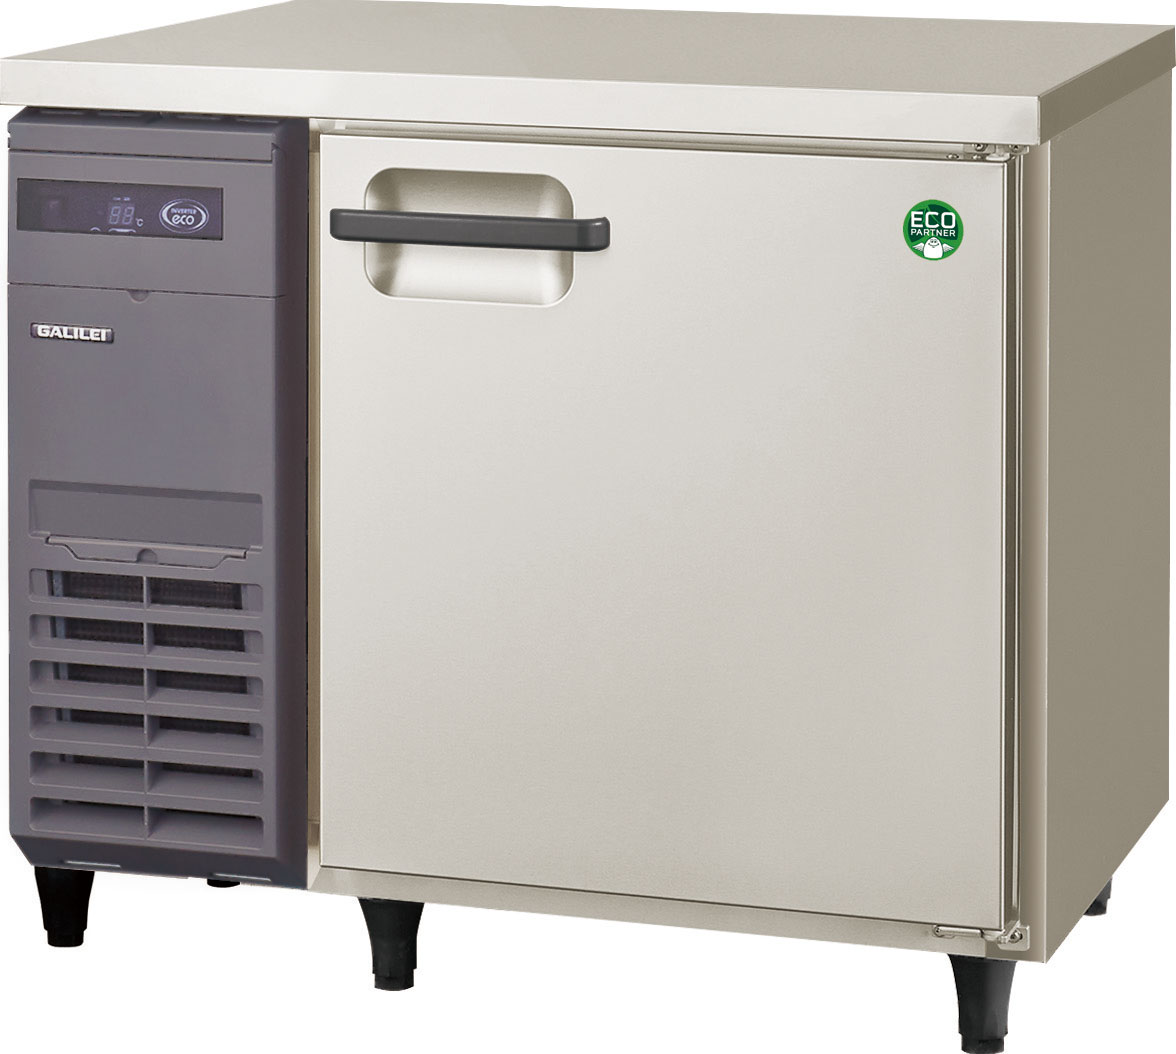 LRC-090RX - コールドテーブル冷蔵庫 - 冷蔵庫 - ヨコ型 - 業務用冷凍